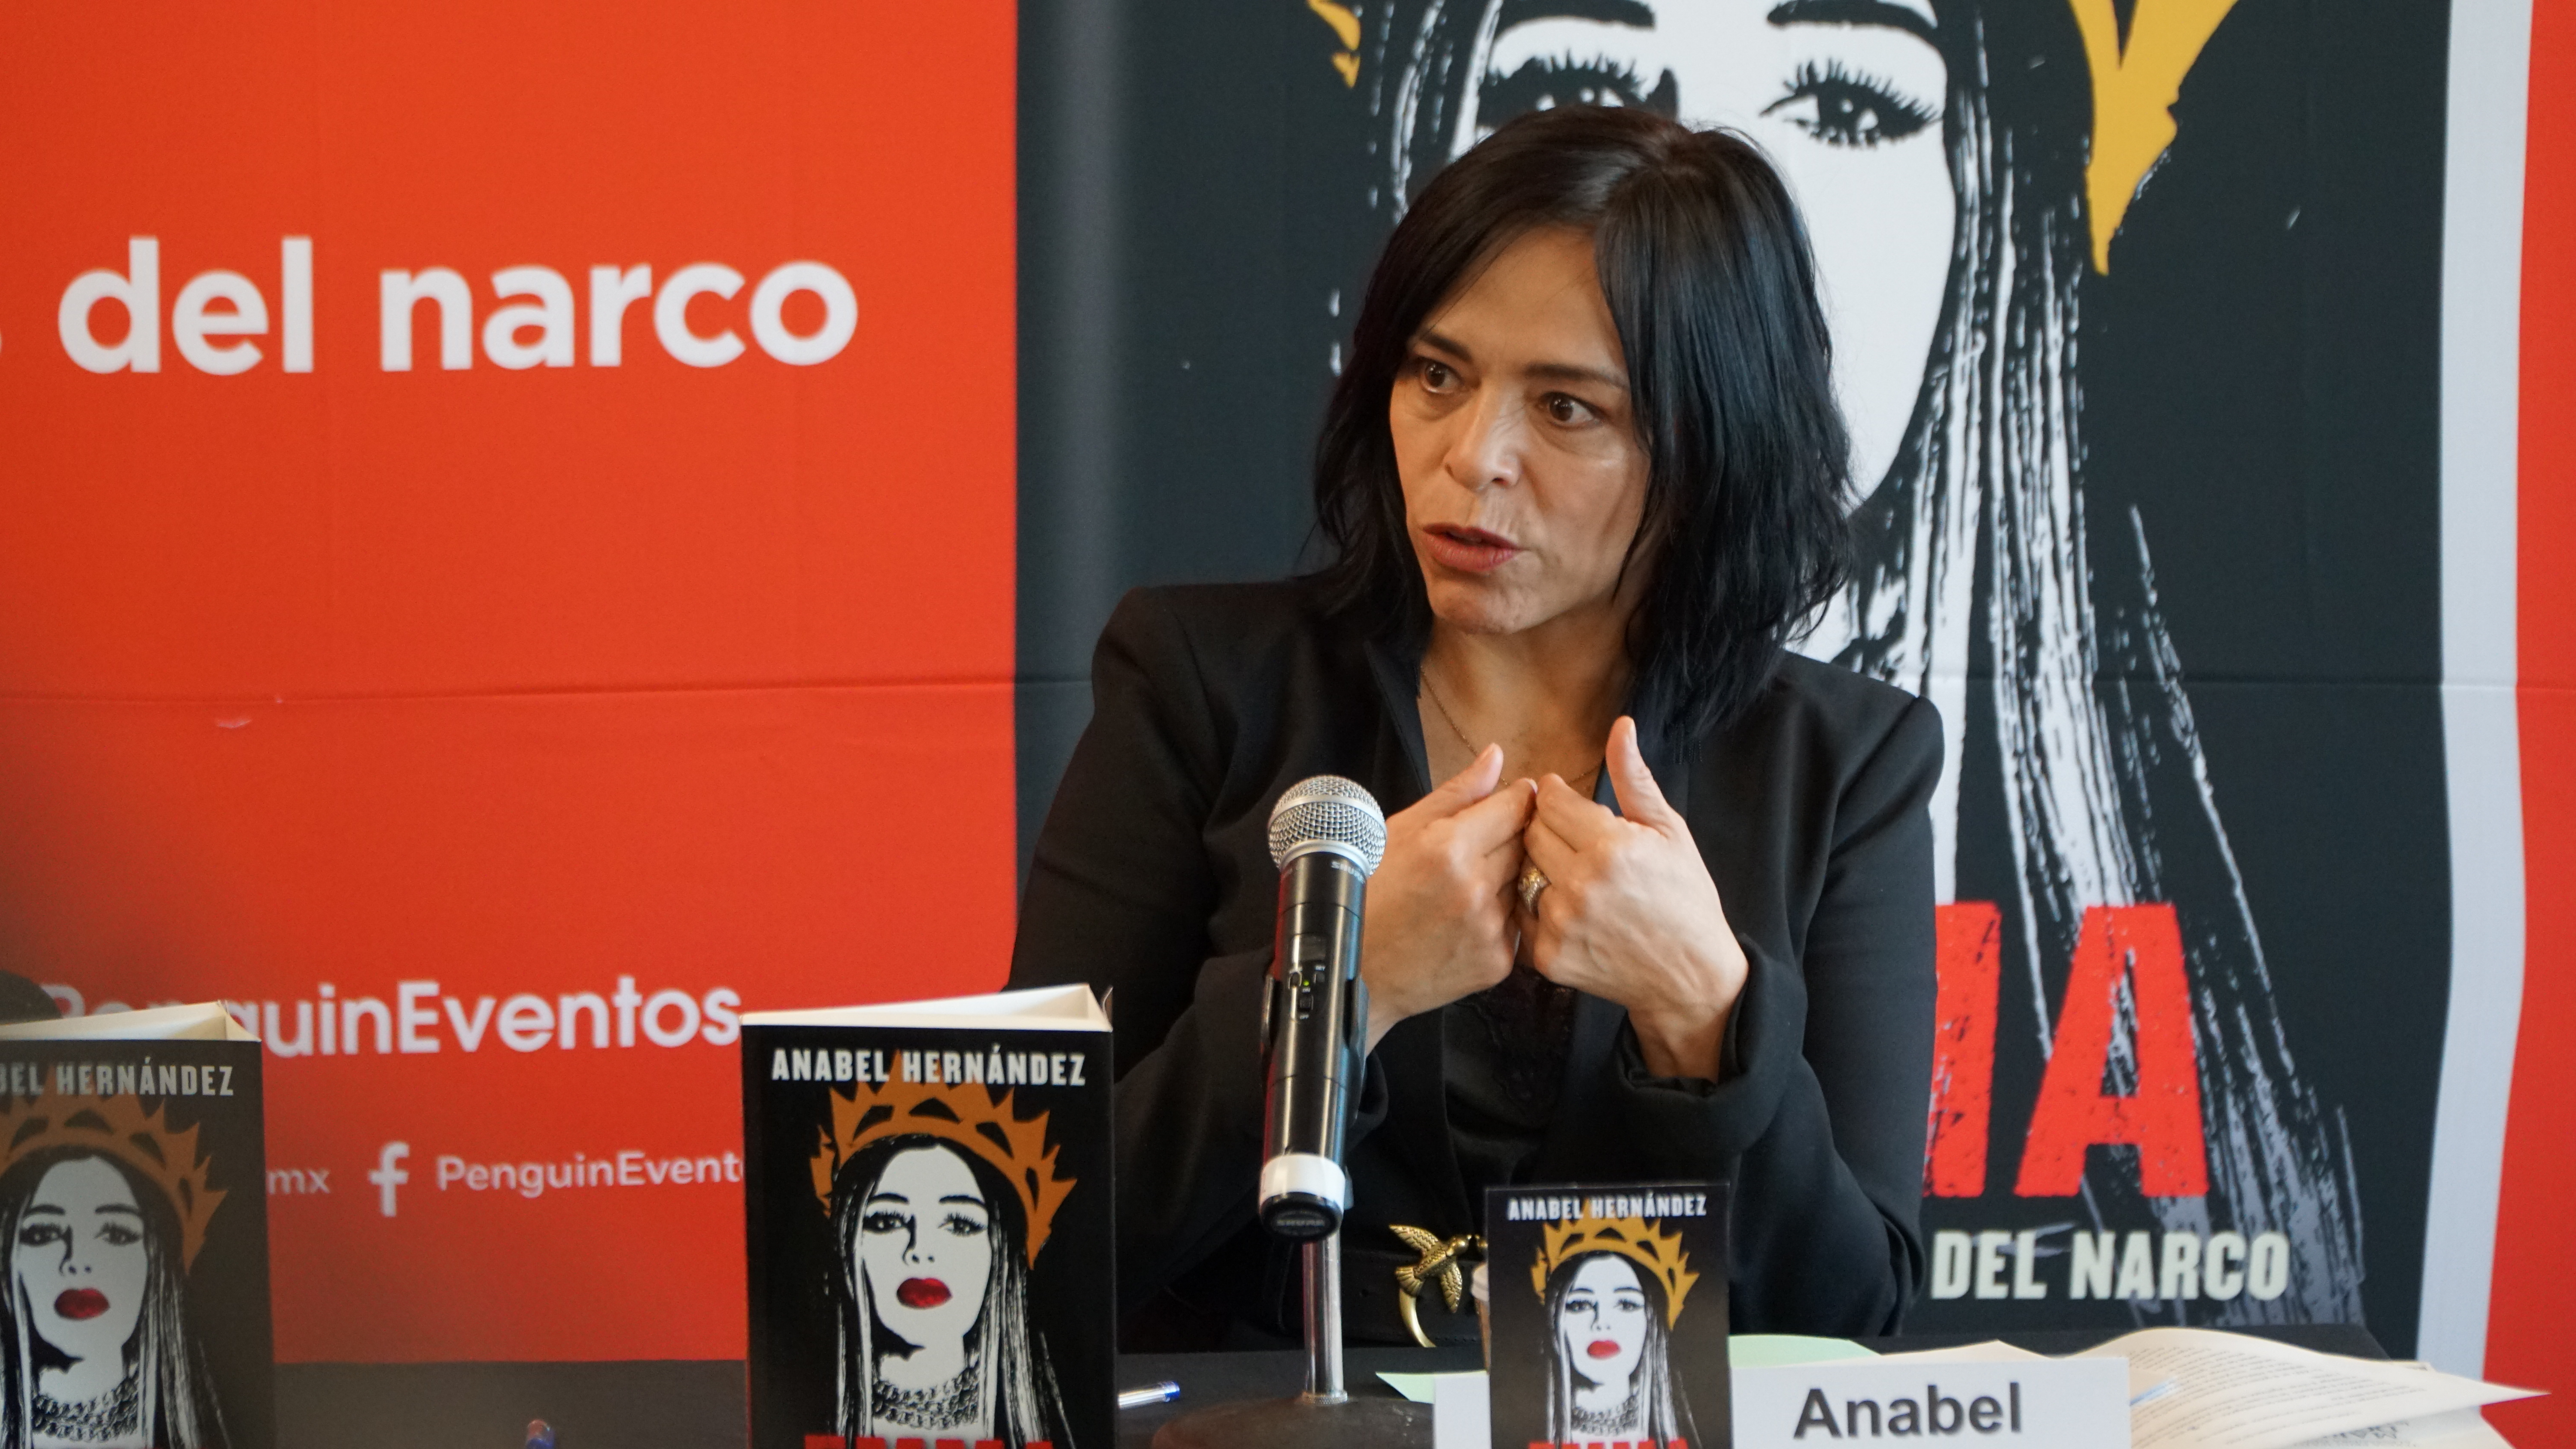 En México arrancó el Tribunal de los Pueblos sobre el Asesinato de Periodistas con Anabel Hernández como integrante

Fotos: J.M. Mariscal/Infobae